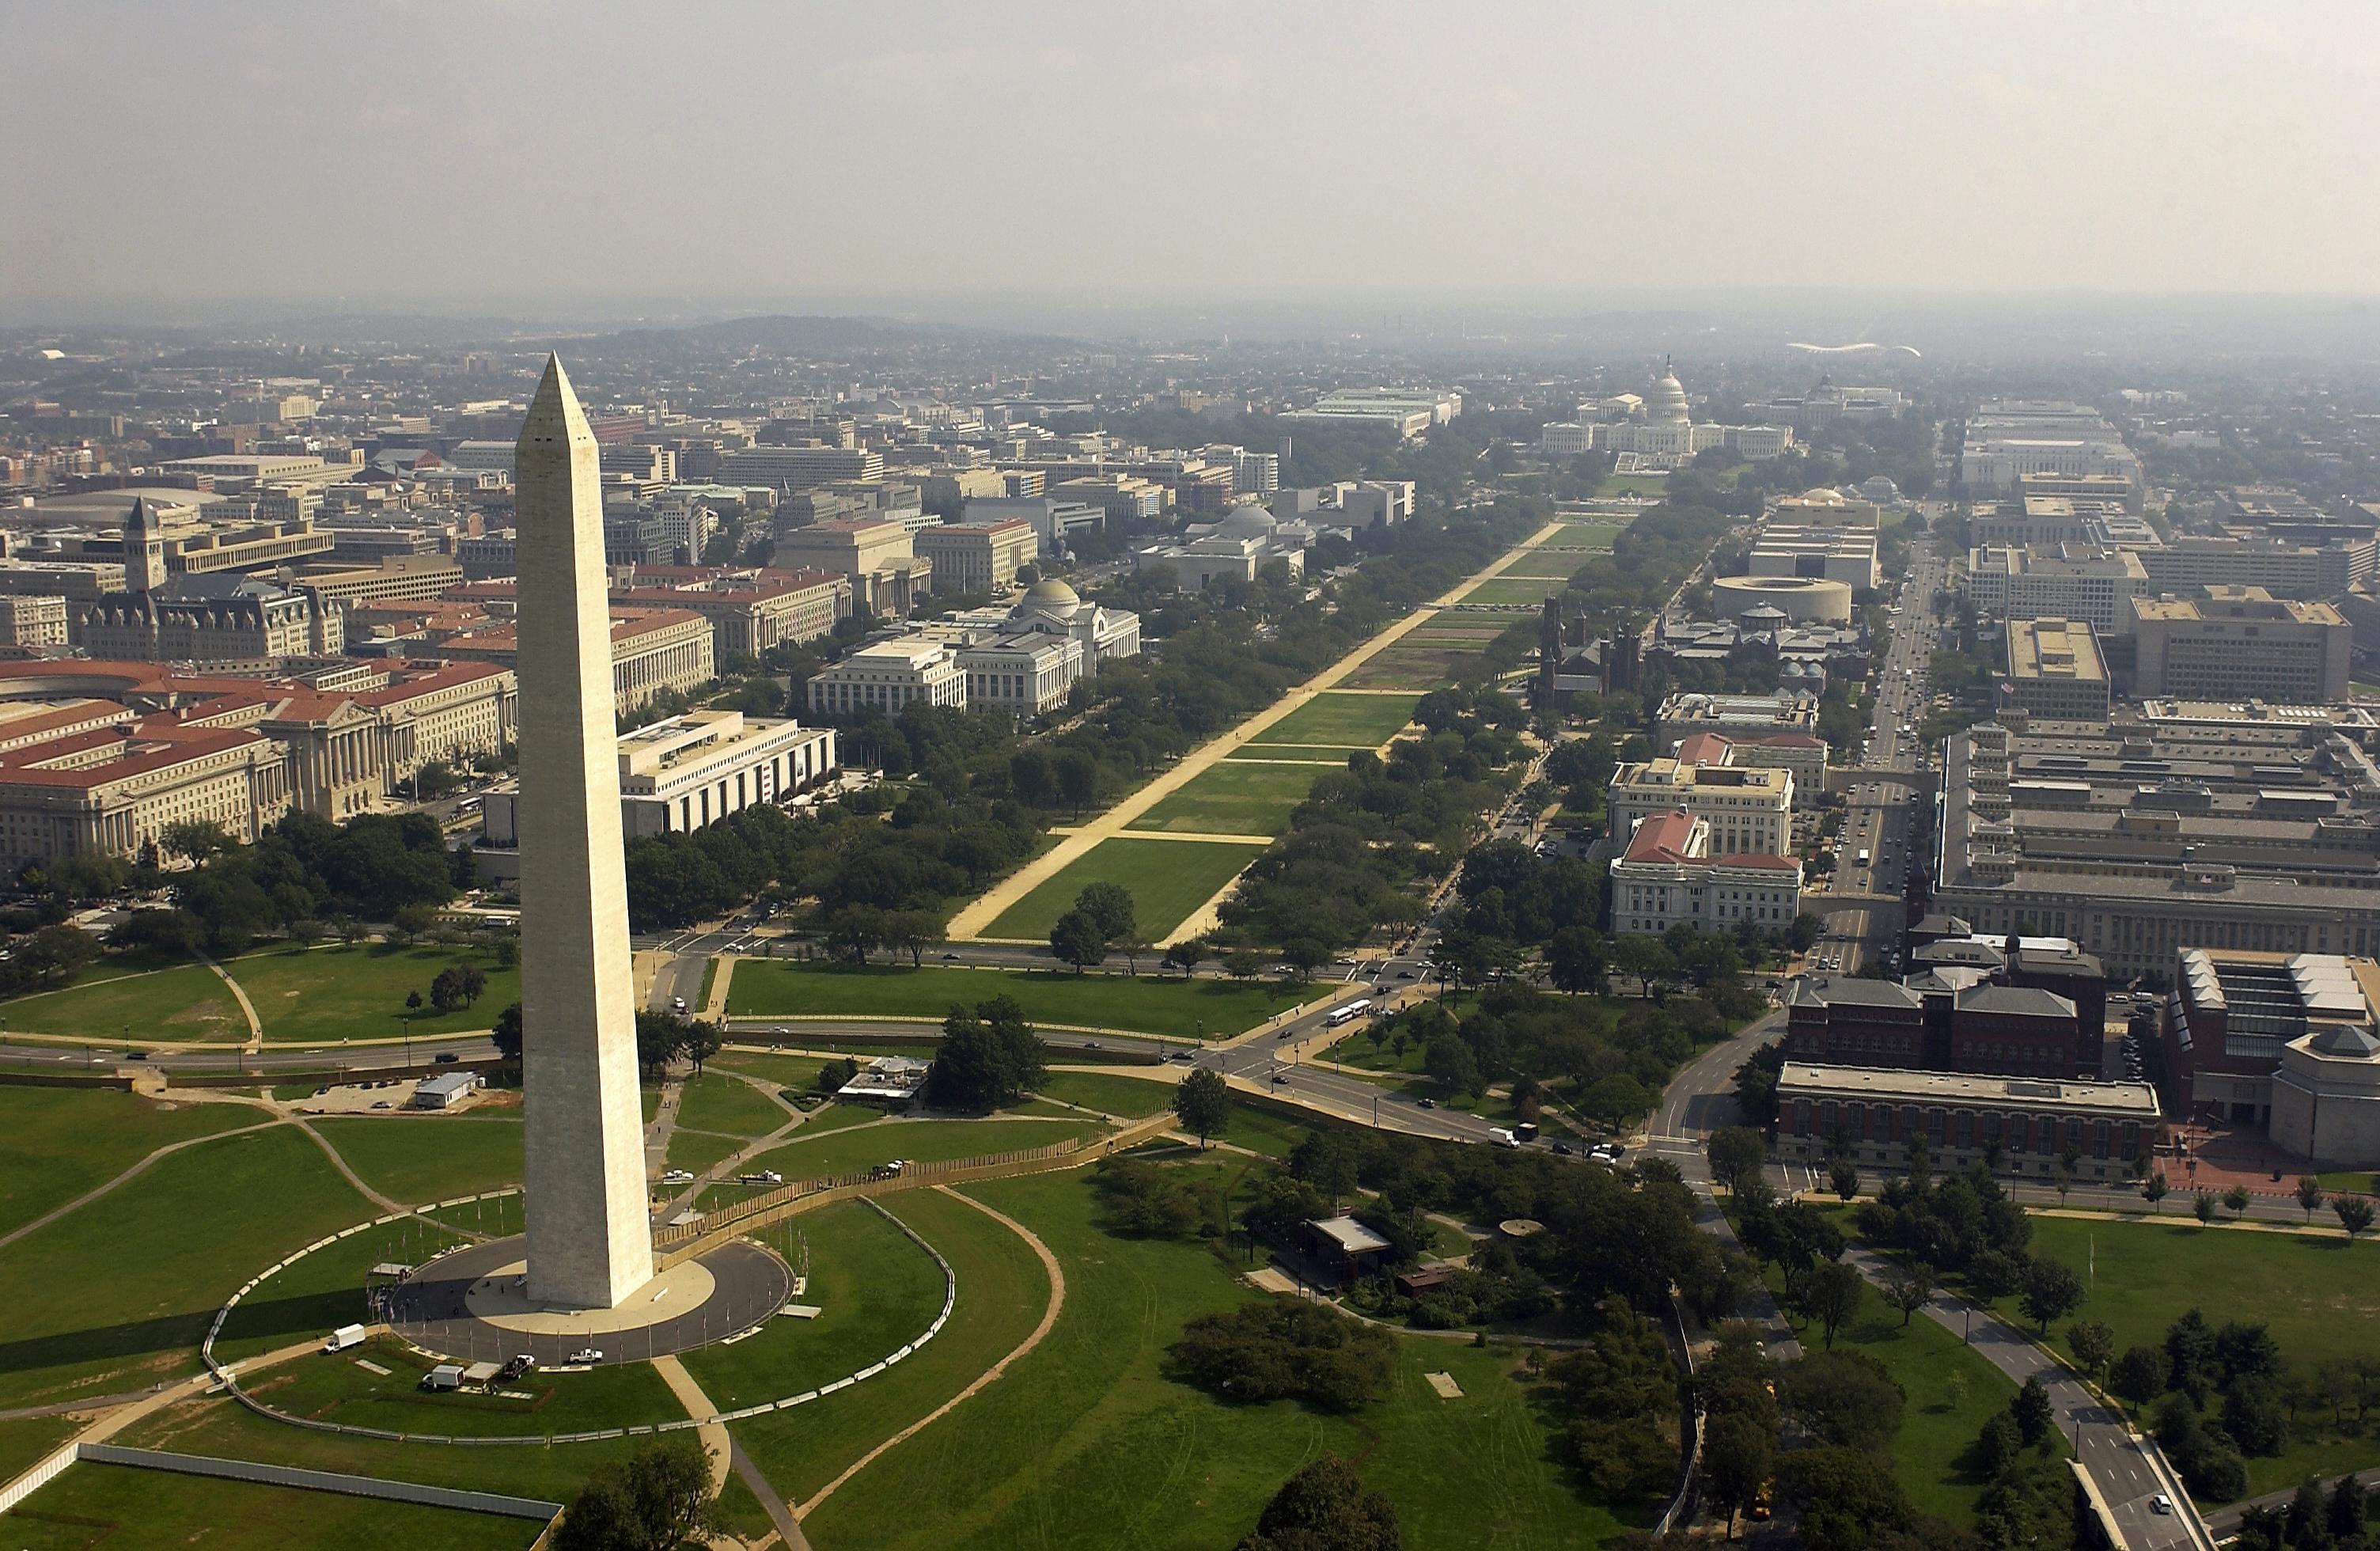 Thủ đô Hoa Kỳ tên là Washington DC